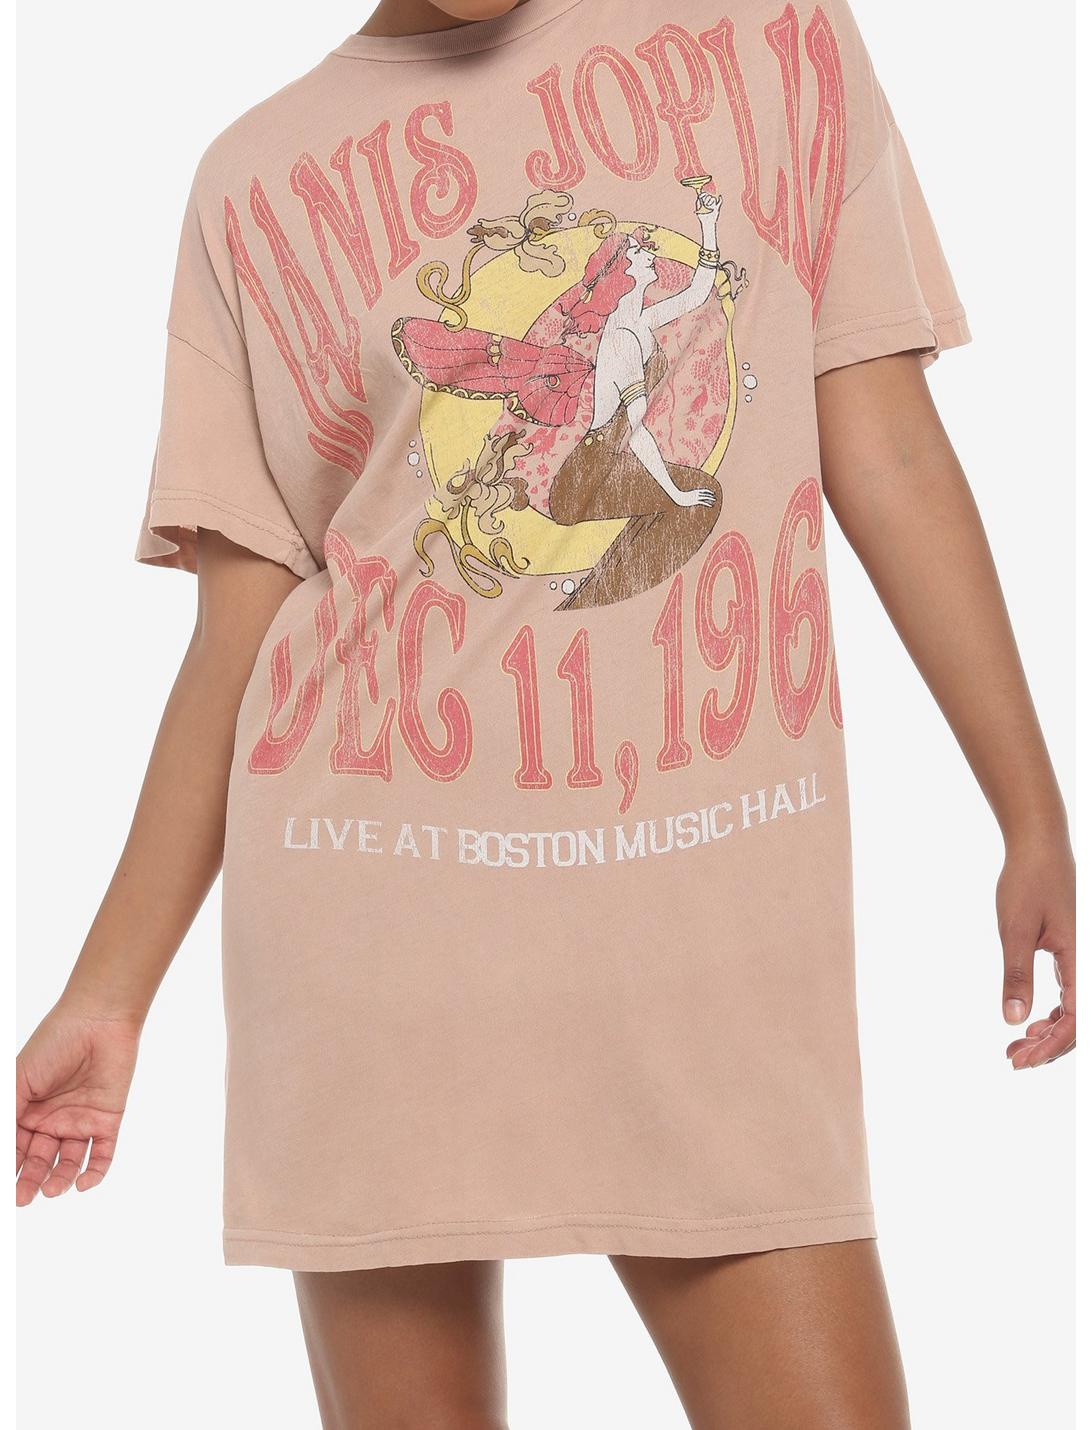 Janis Joplin Live In Boston T-Shirt Dress, RUST, hi-res